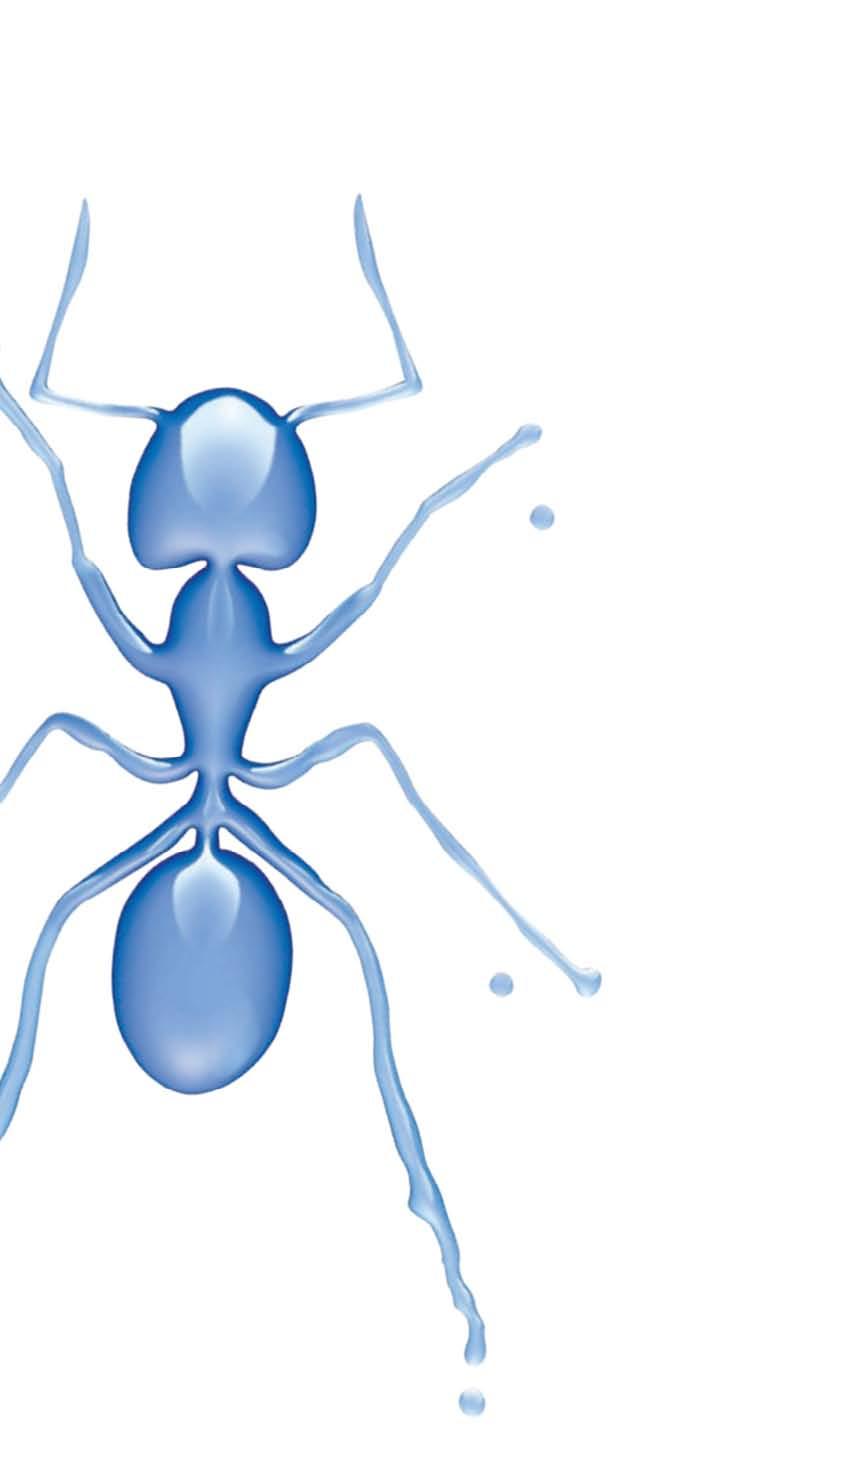 Problematika mravenců Chytrá řešení BASF Mravenci jsou v sezóně jedním z nejčastějších důvodů, proč si lidé zvou domů k zásahu profesionály.